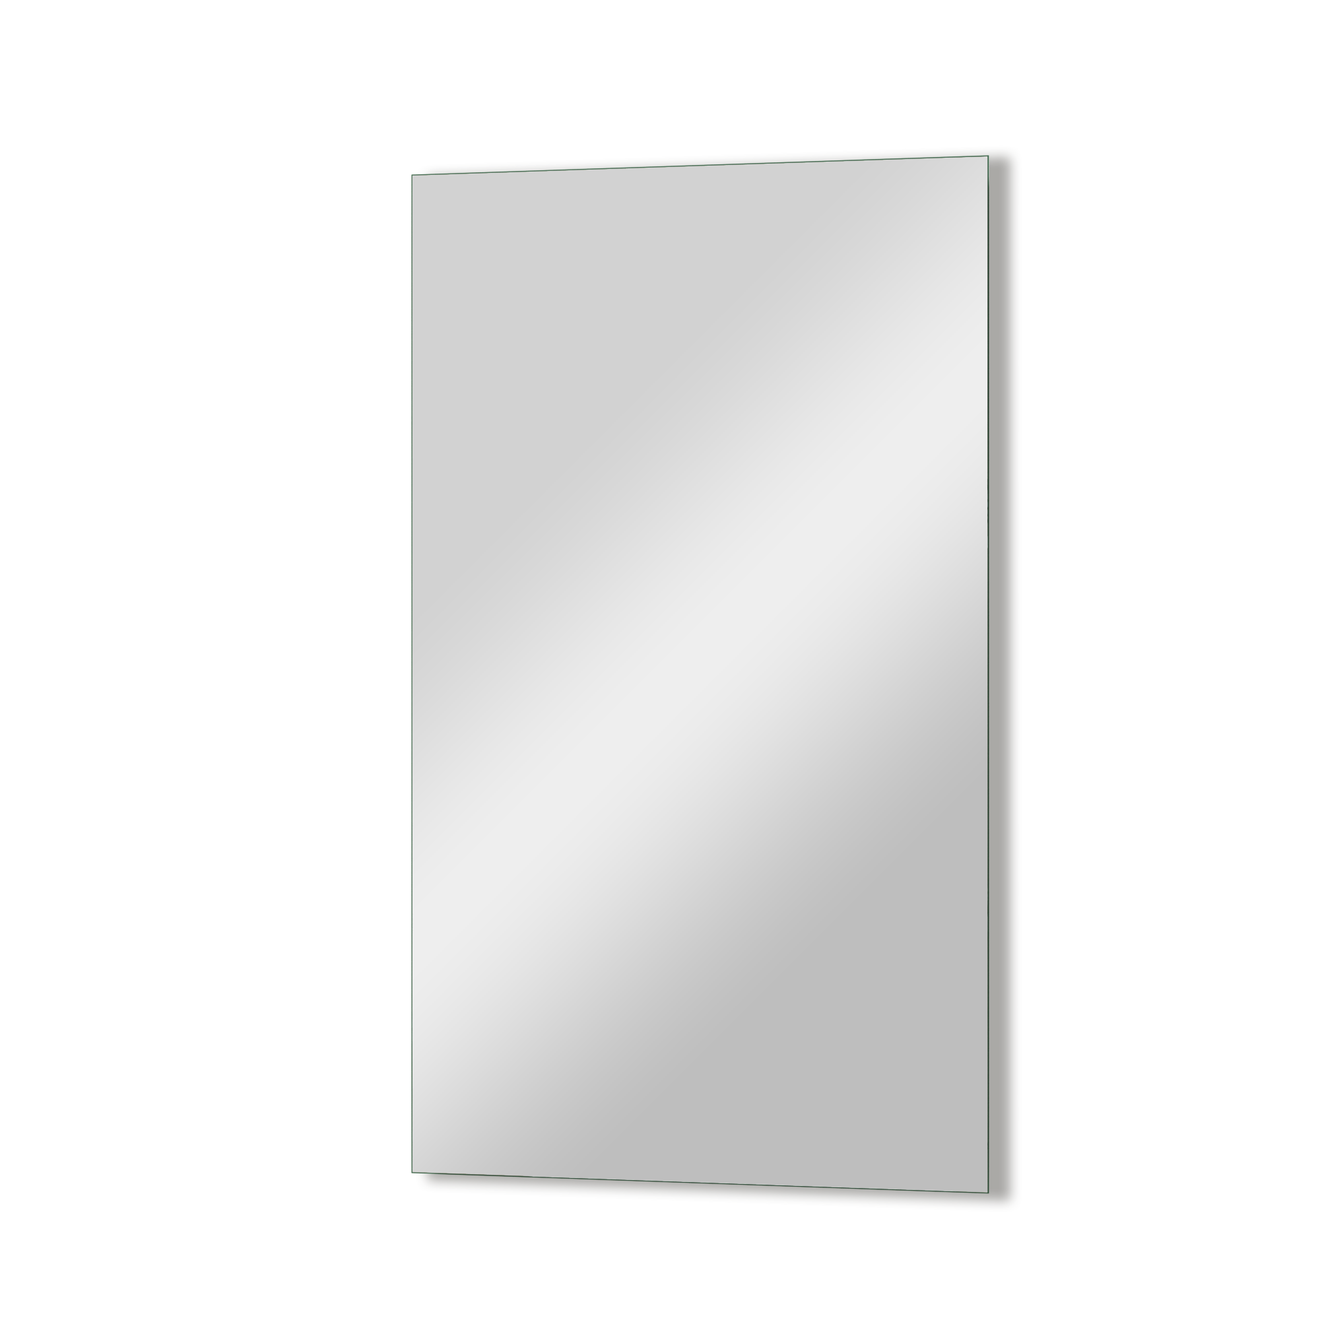 Storke Edge miroir rectangulaire 40 x 70 cm offre à 45€ sur X2O